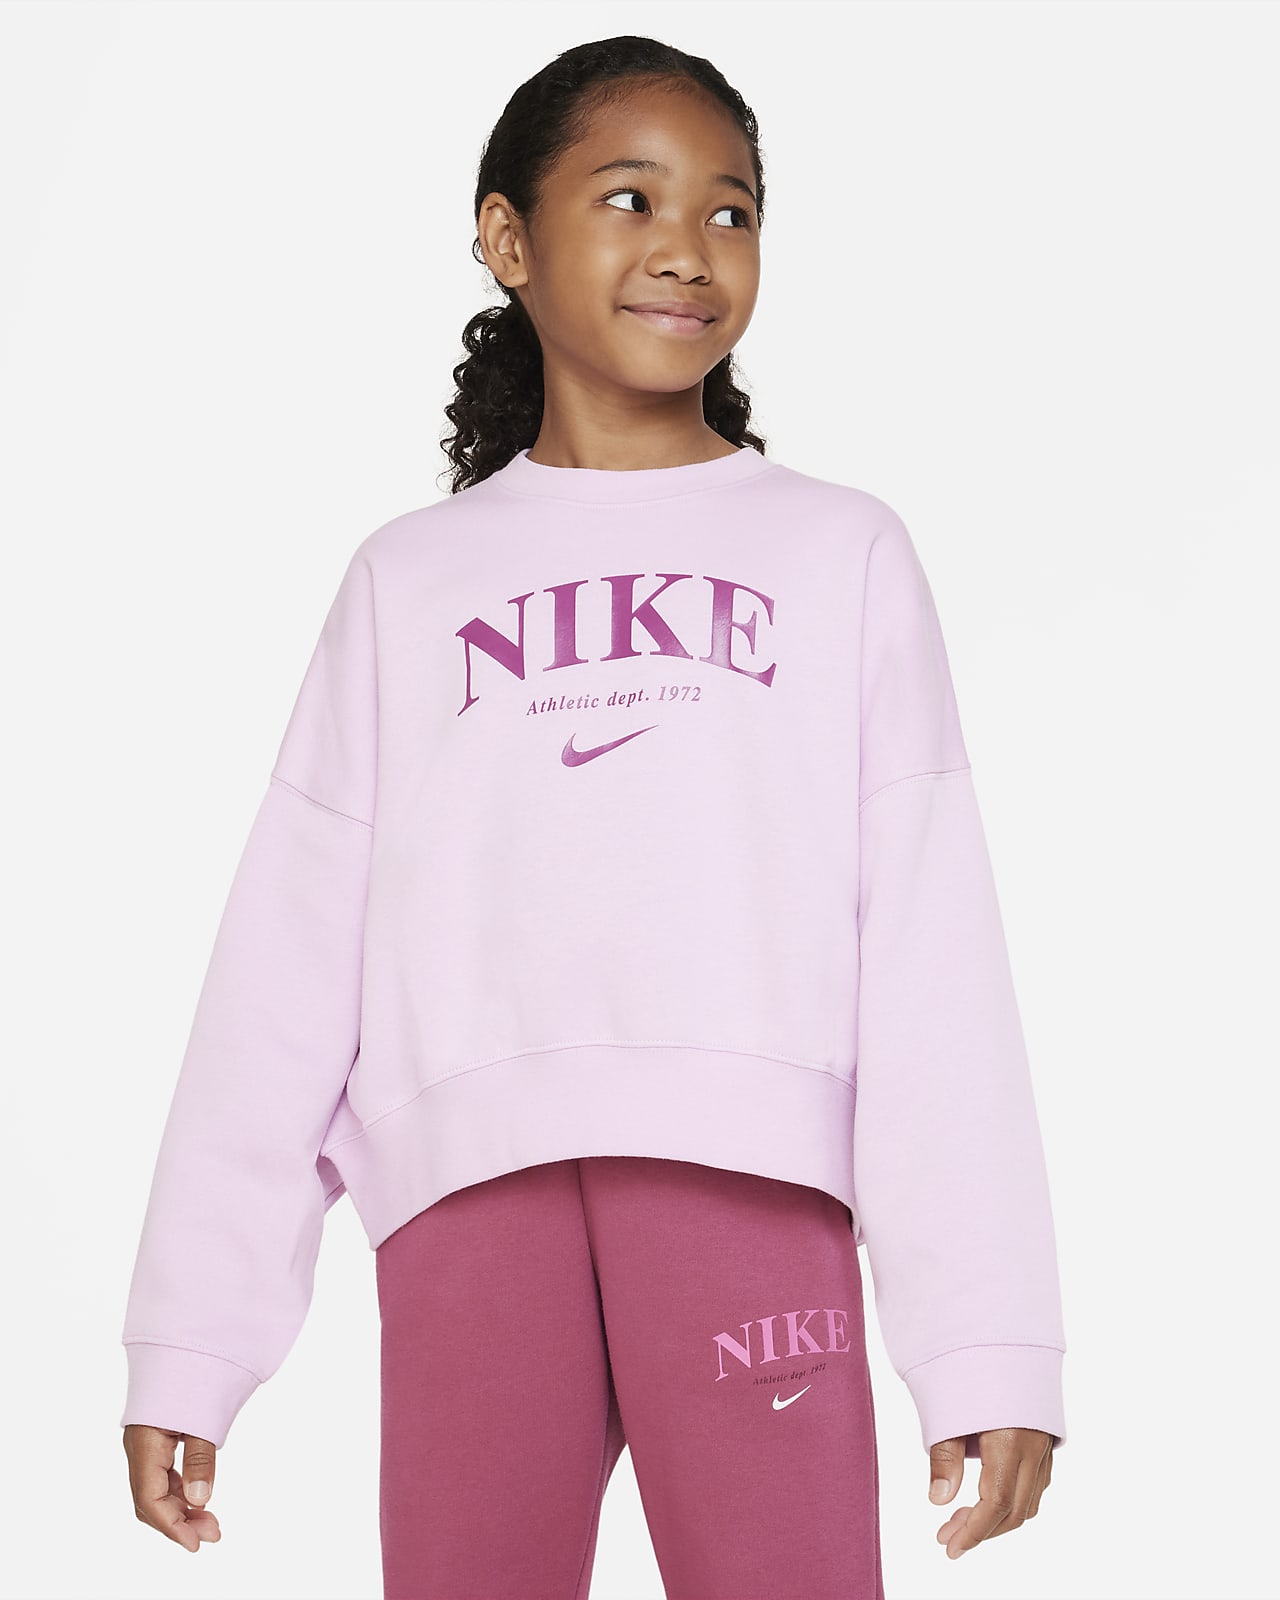 Flísová mikina Nike Sportswear Trend pro větší děti (dívky)